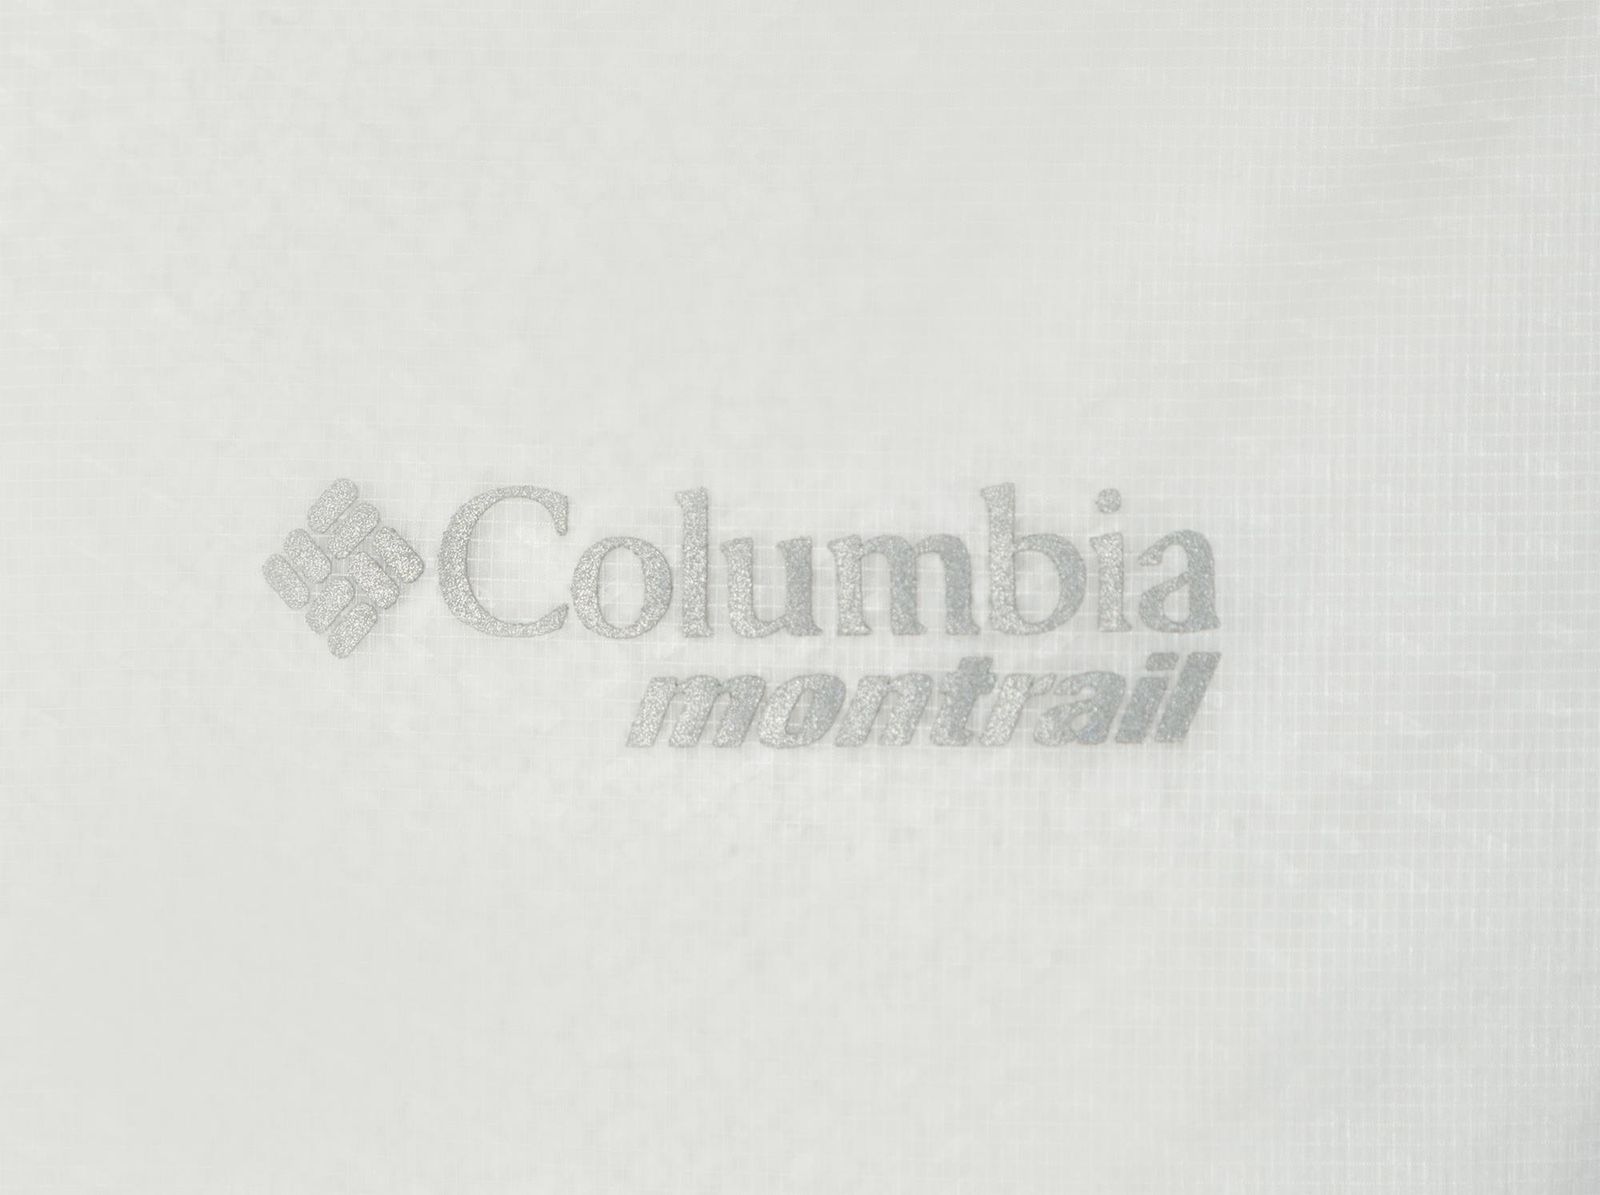   Columbia F, : . 1840921-031.  S (44/46)